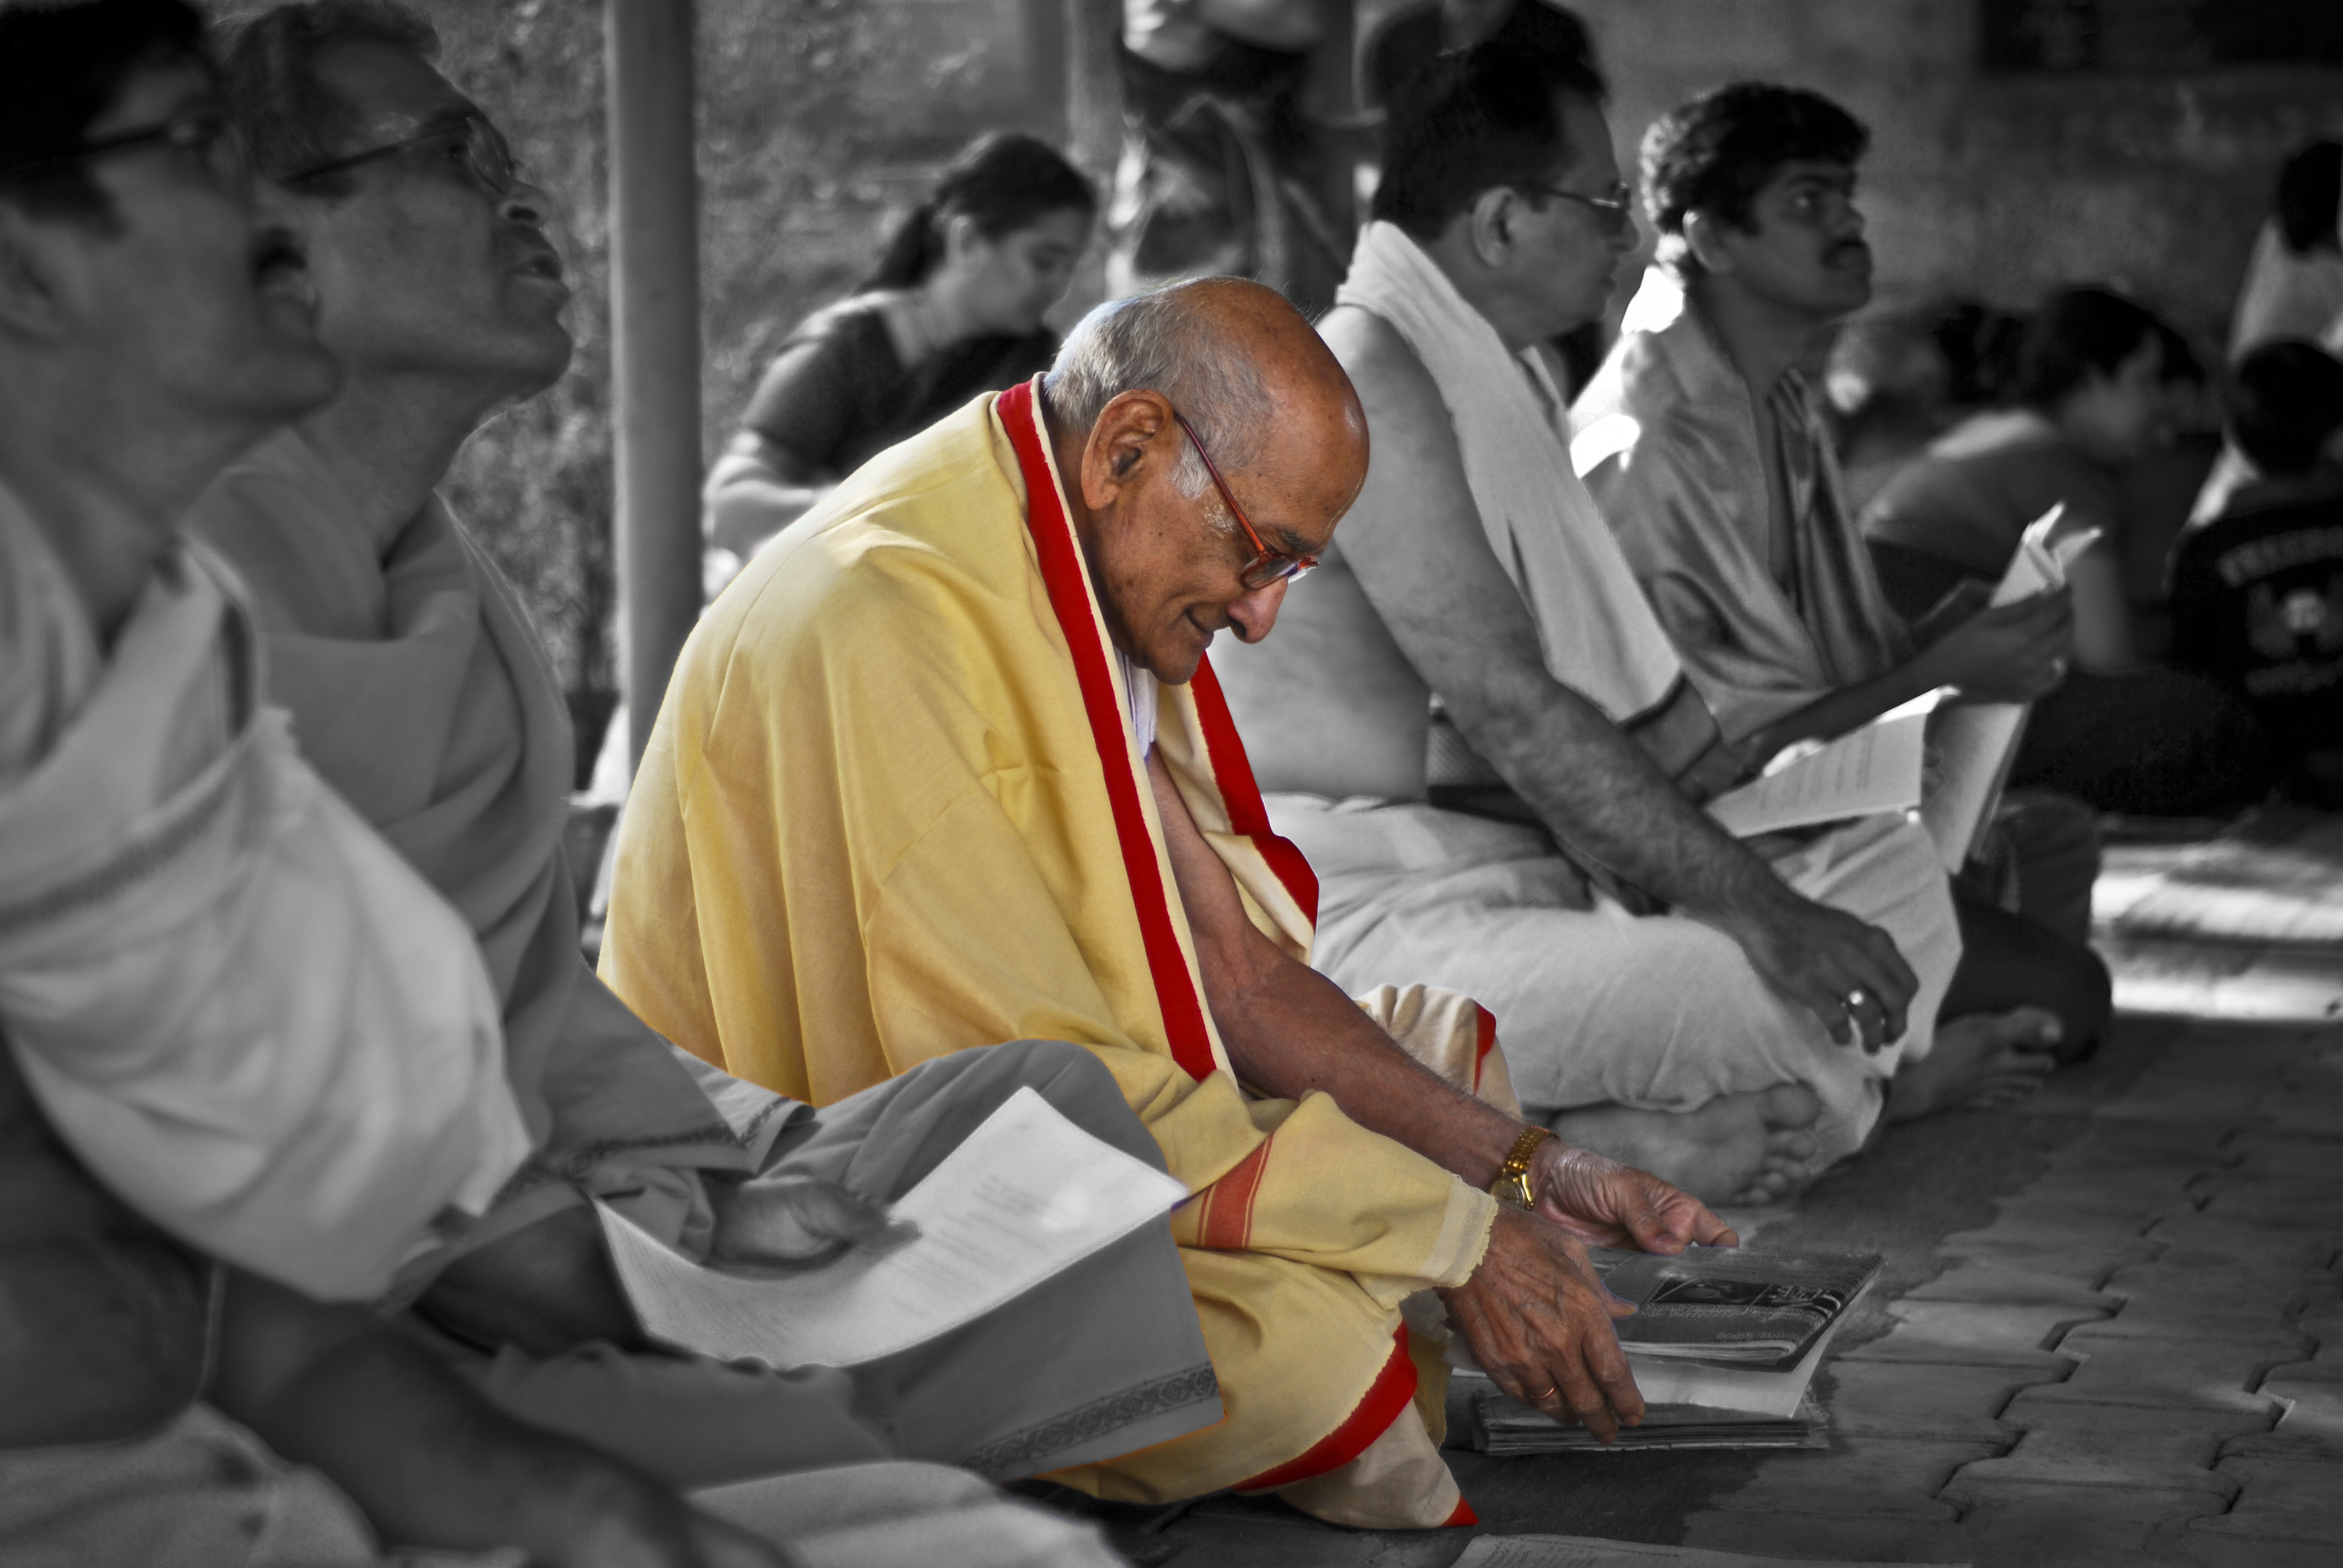 hindu praying images